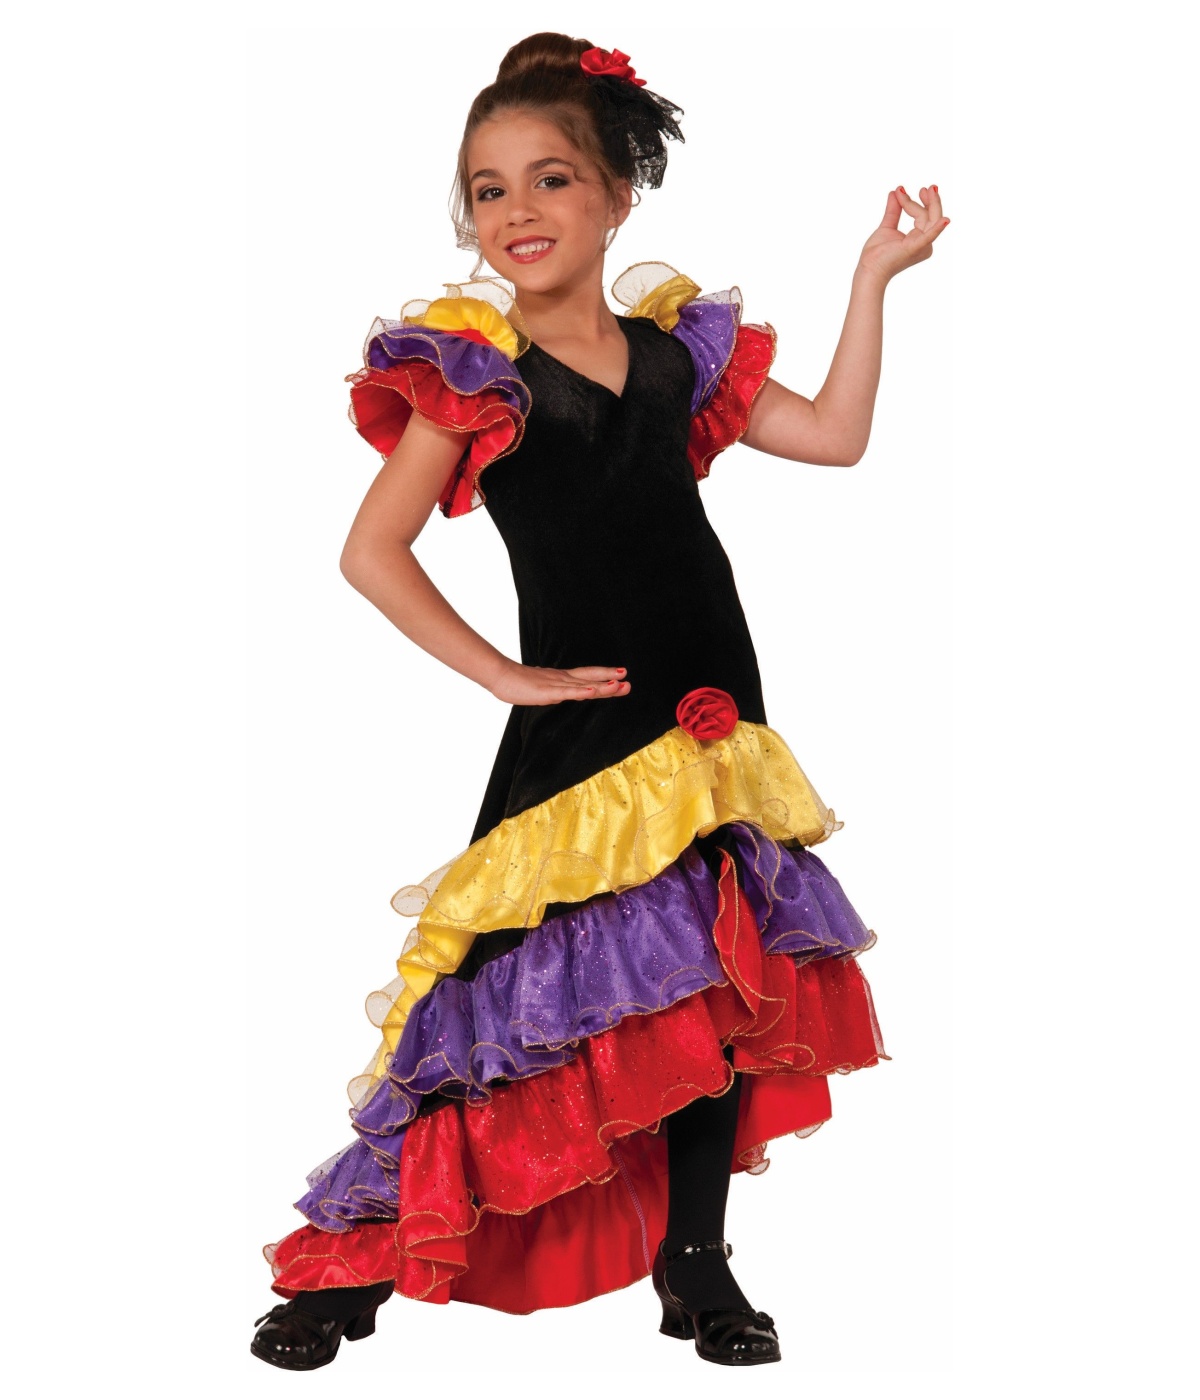  Girls Spanish Dancer Costume